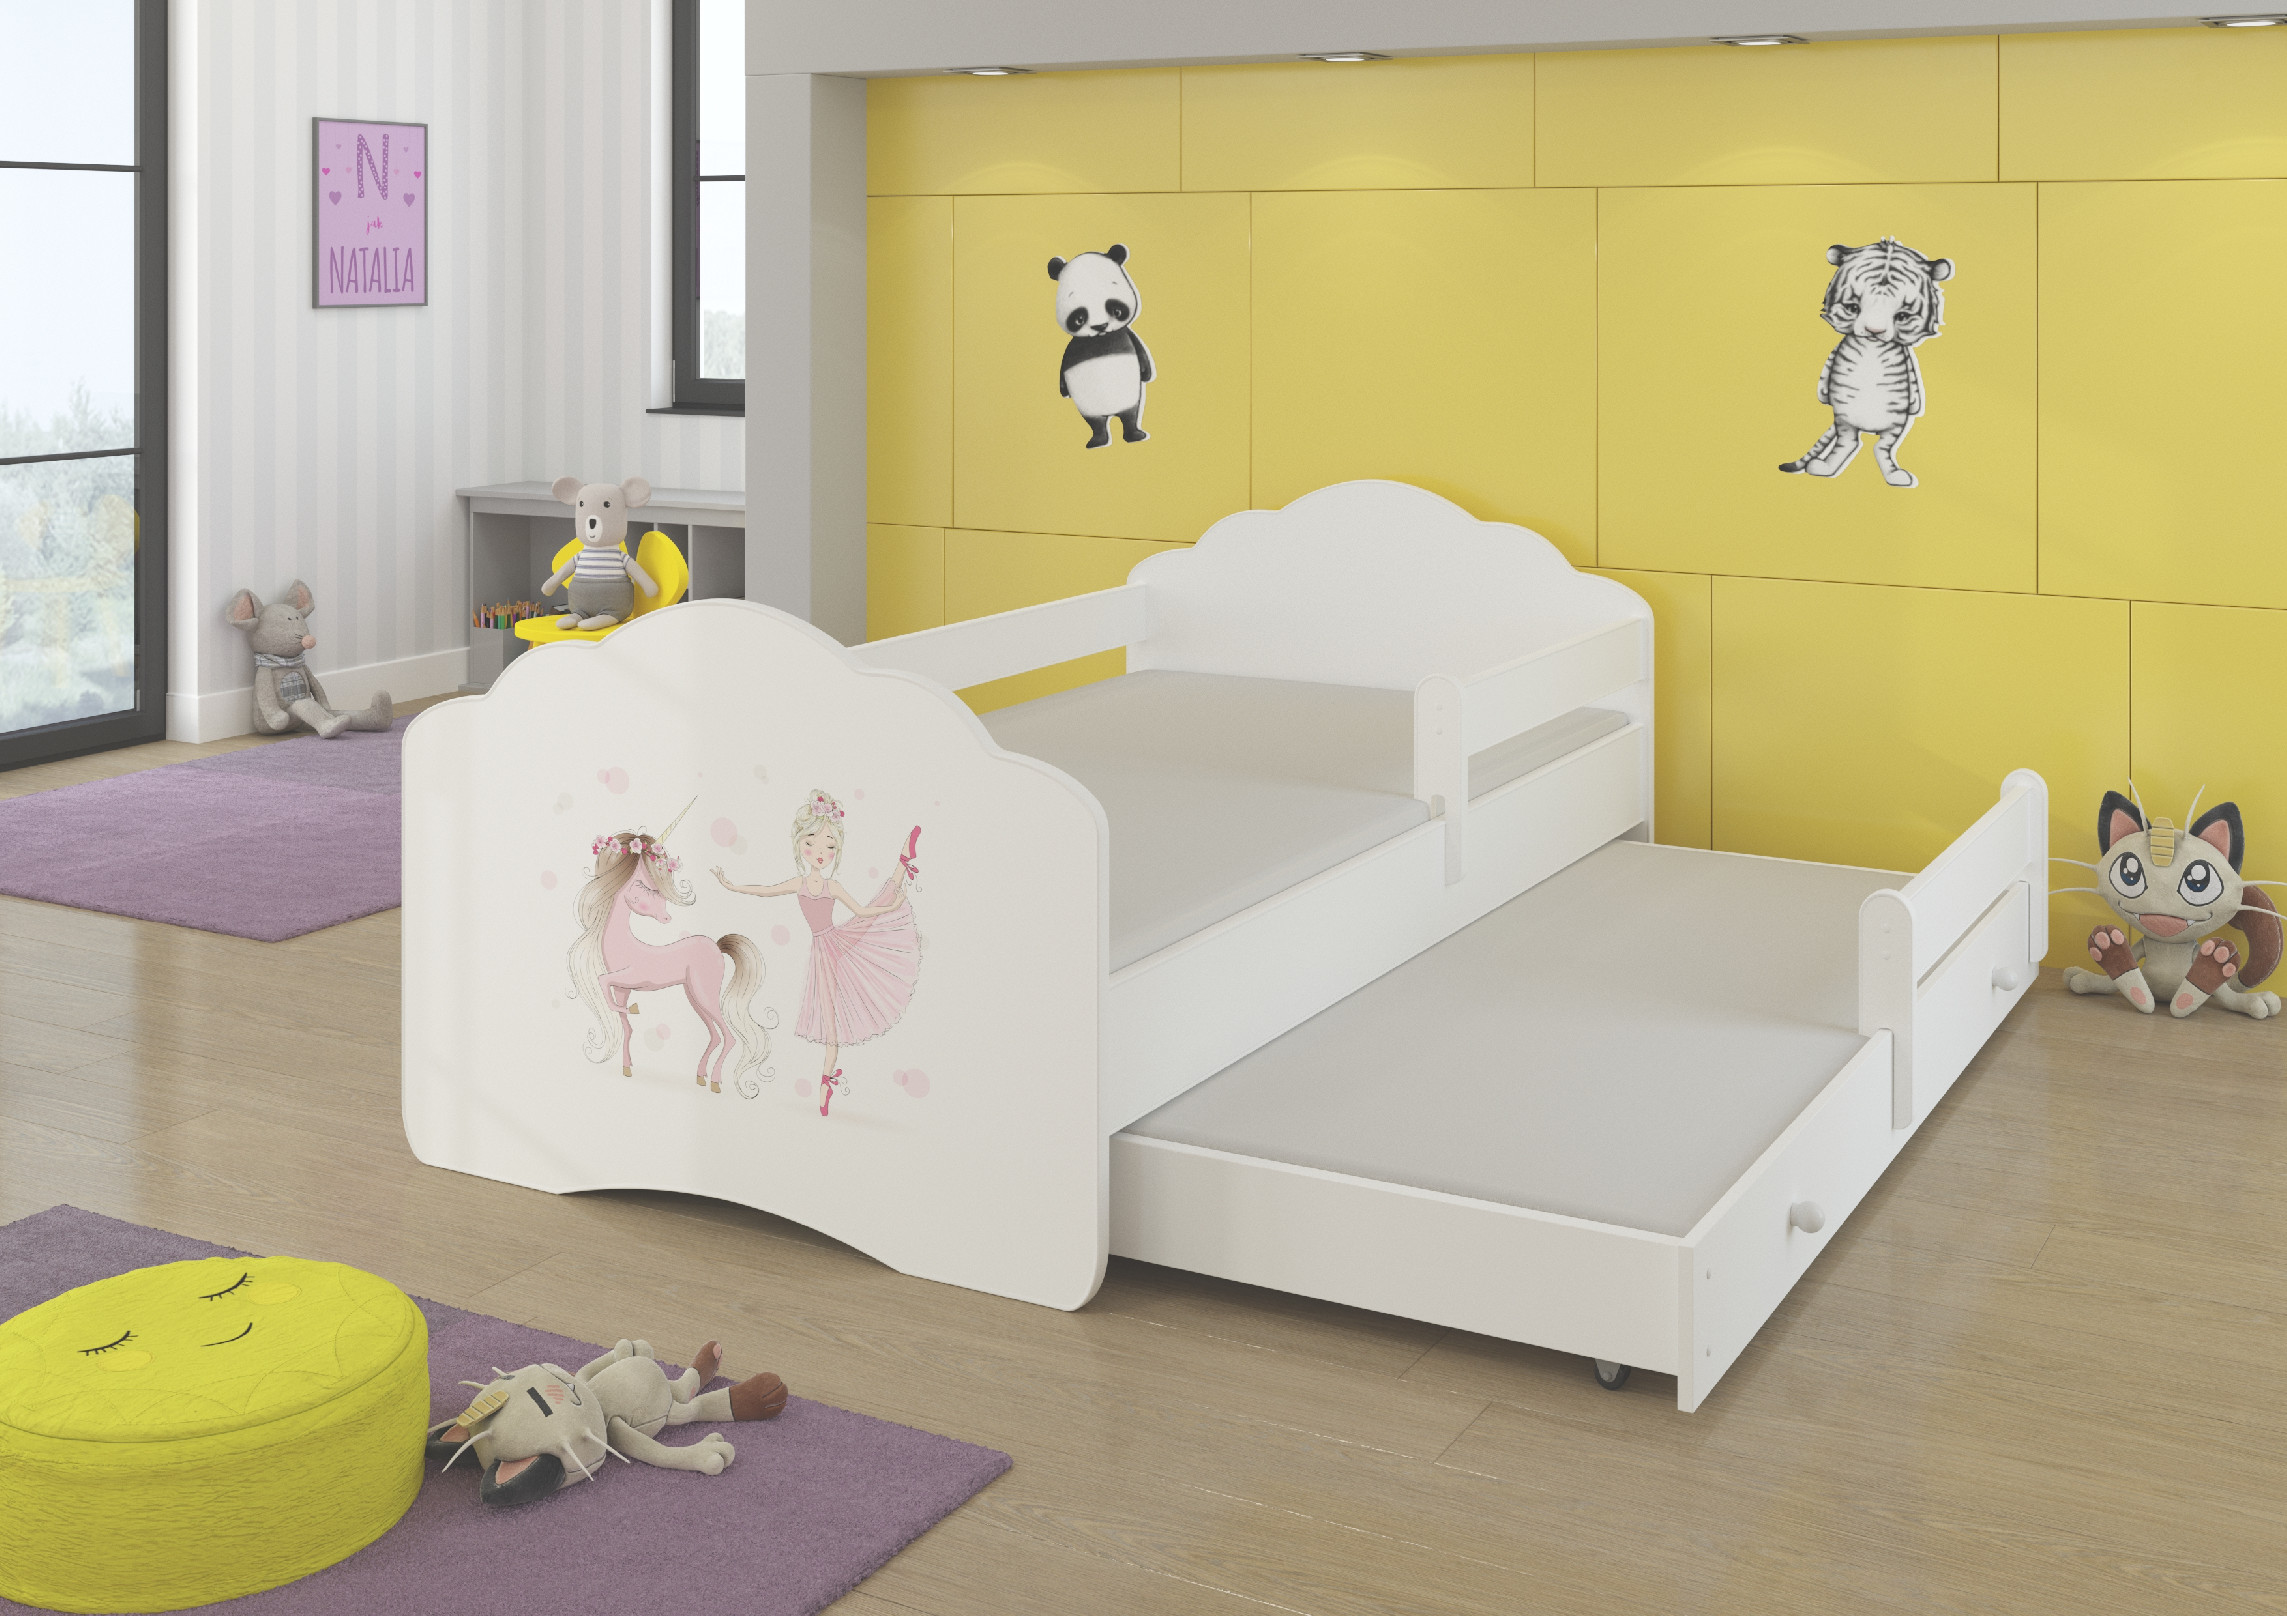 Dětská postel s obrázky - čelo Casimo II bar Rozměr: 160 x 80 cm, Obrázek: Baletka a jednorožec